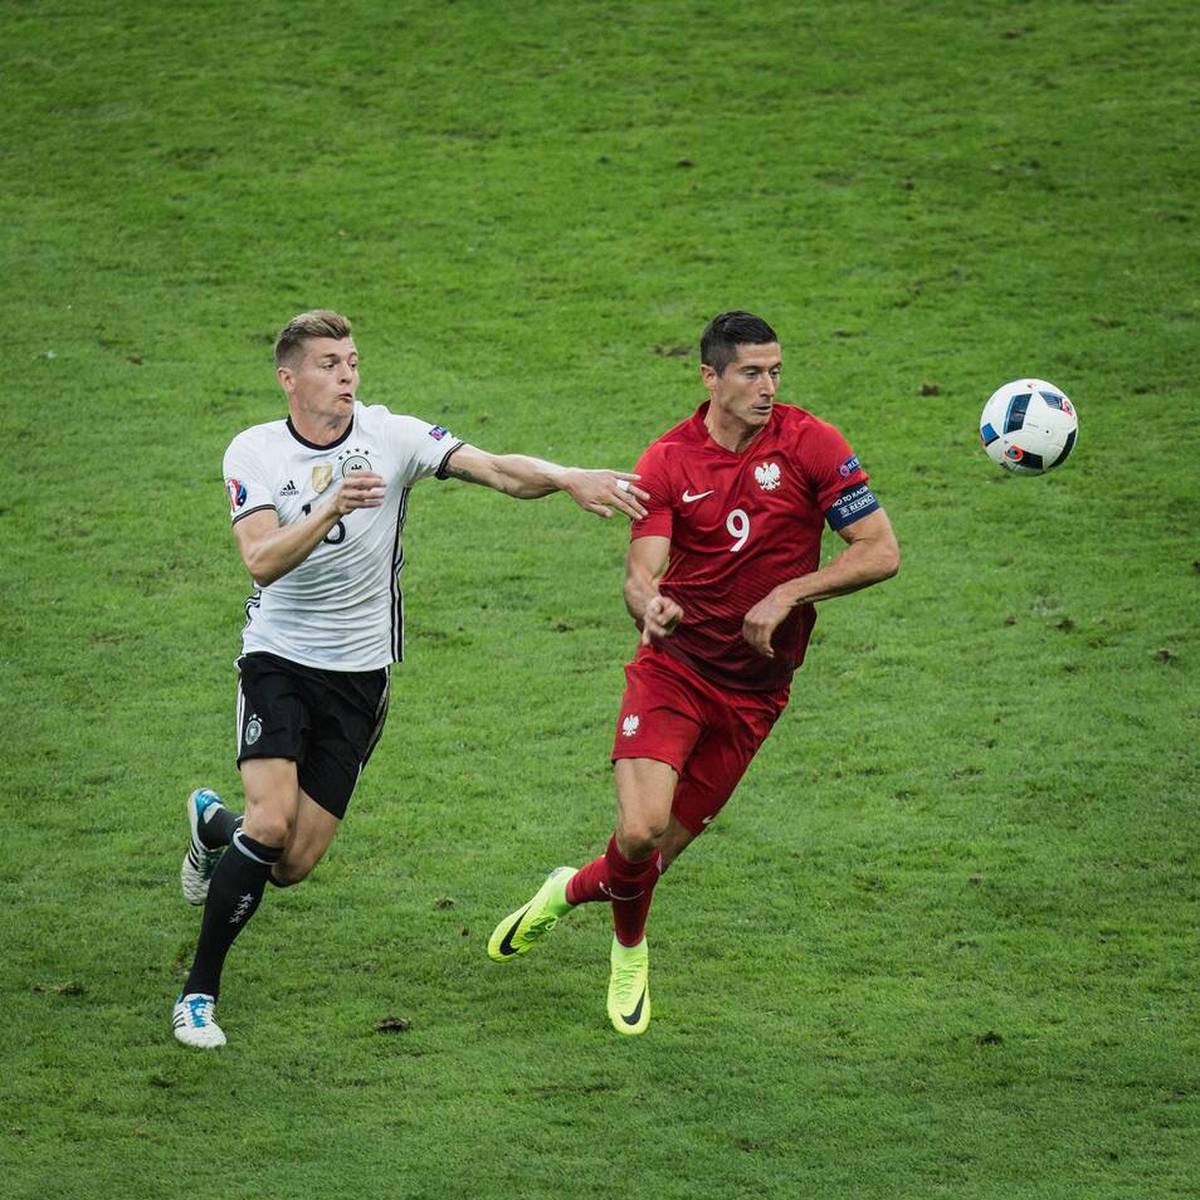 Toni Kroos spricht im Podcast „Einfach mal Luppen“ über die Zukunft von Robert Lewandowski beim FC Bayern. Es stellt sich die Frage, ob der Rekordmeister den Polen noch überzeugen könne. Zudem schwärmt er von einem neuen Mitspieler.